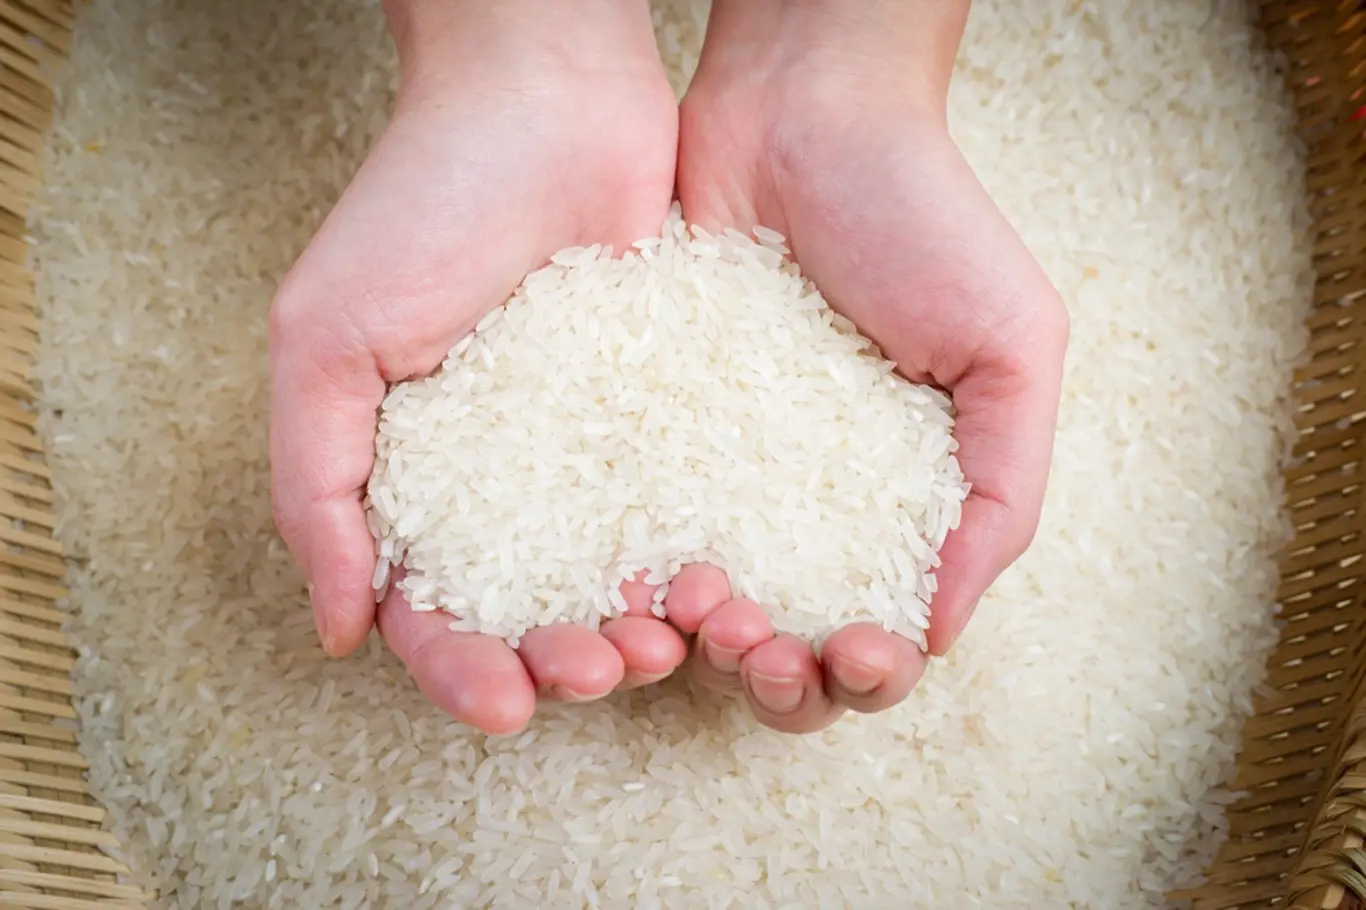 Natural rýže obsahuje i velké množství slizotvorných látek, které pomáhají při střevních onemocněních a zažívacích potížích.